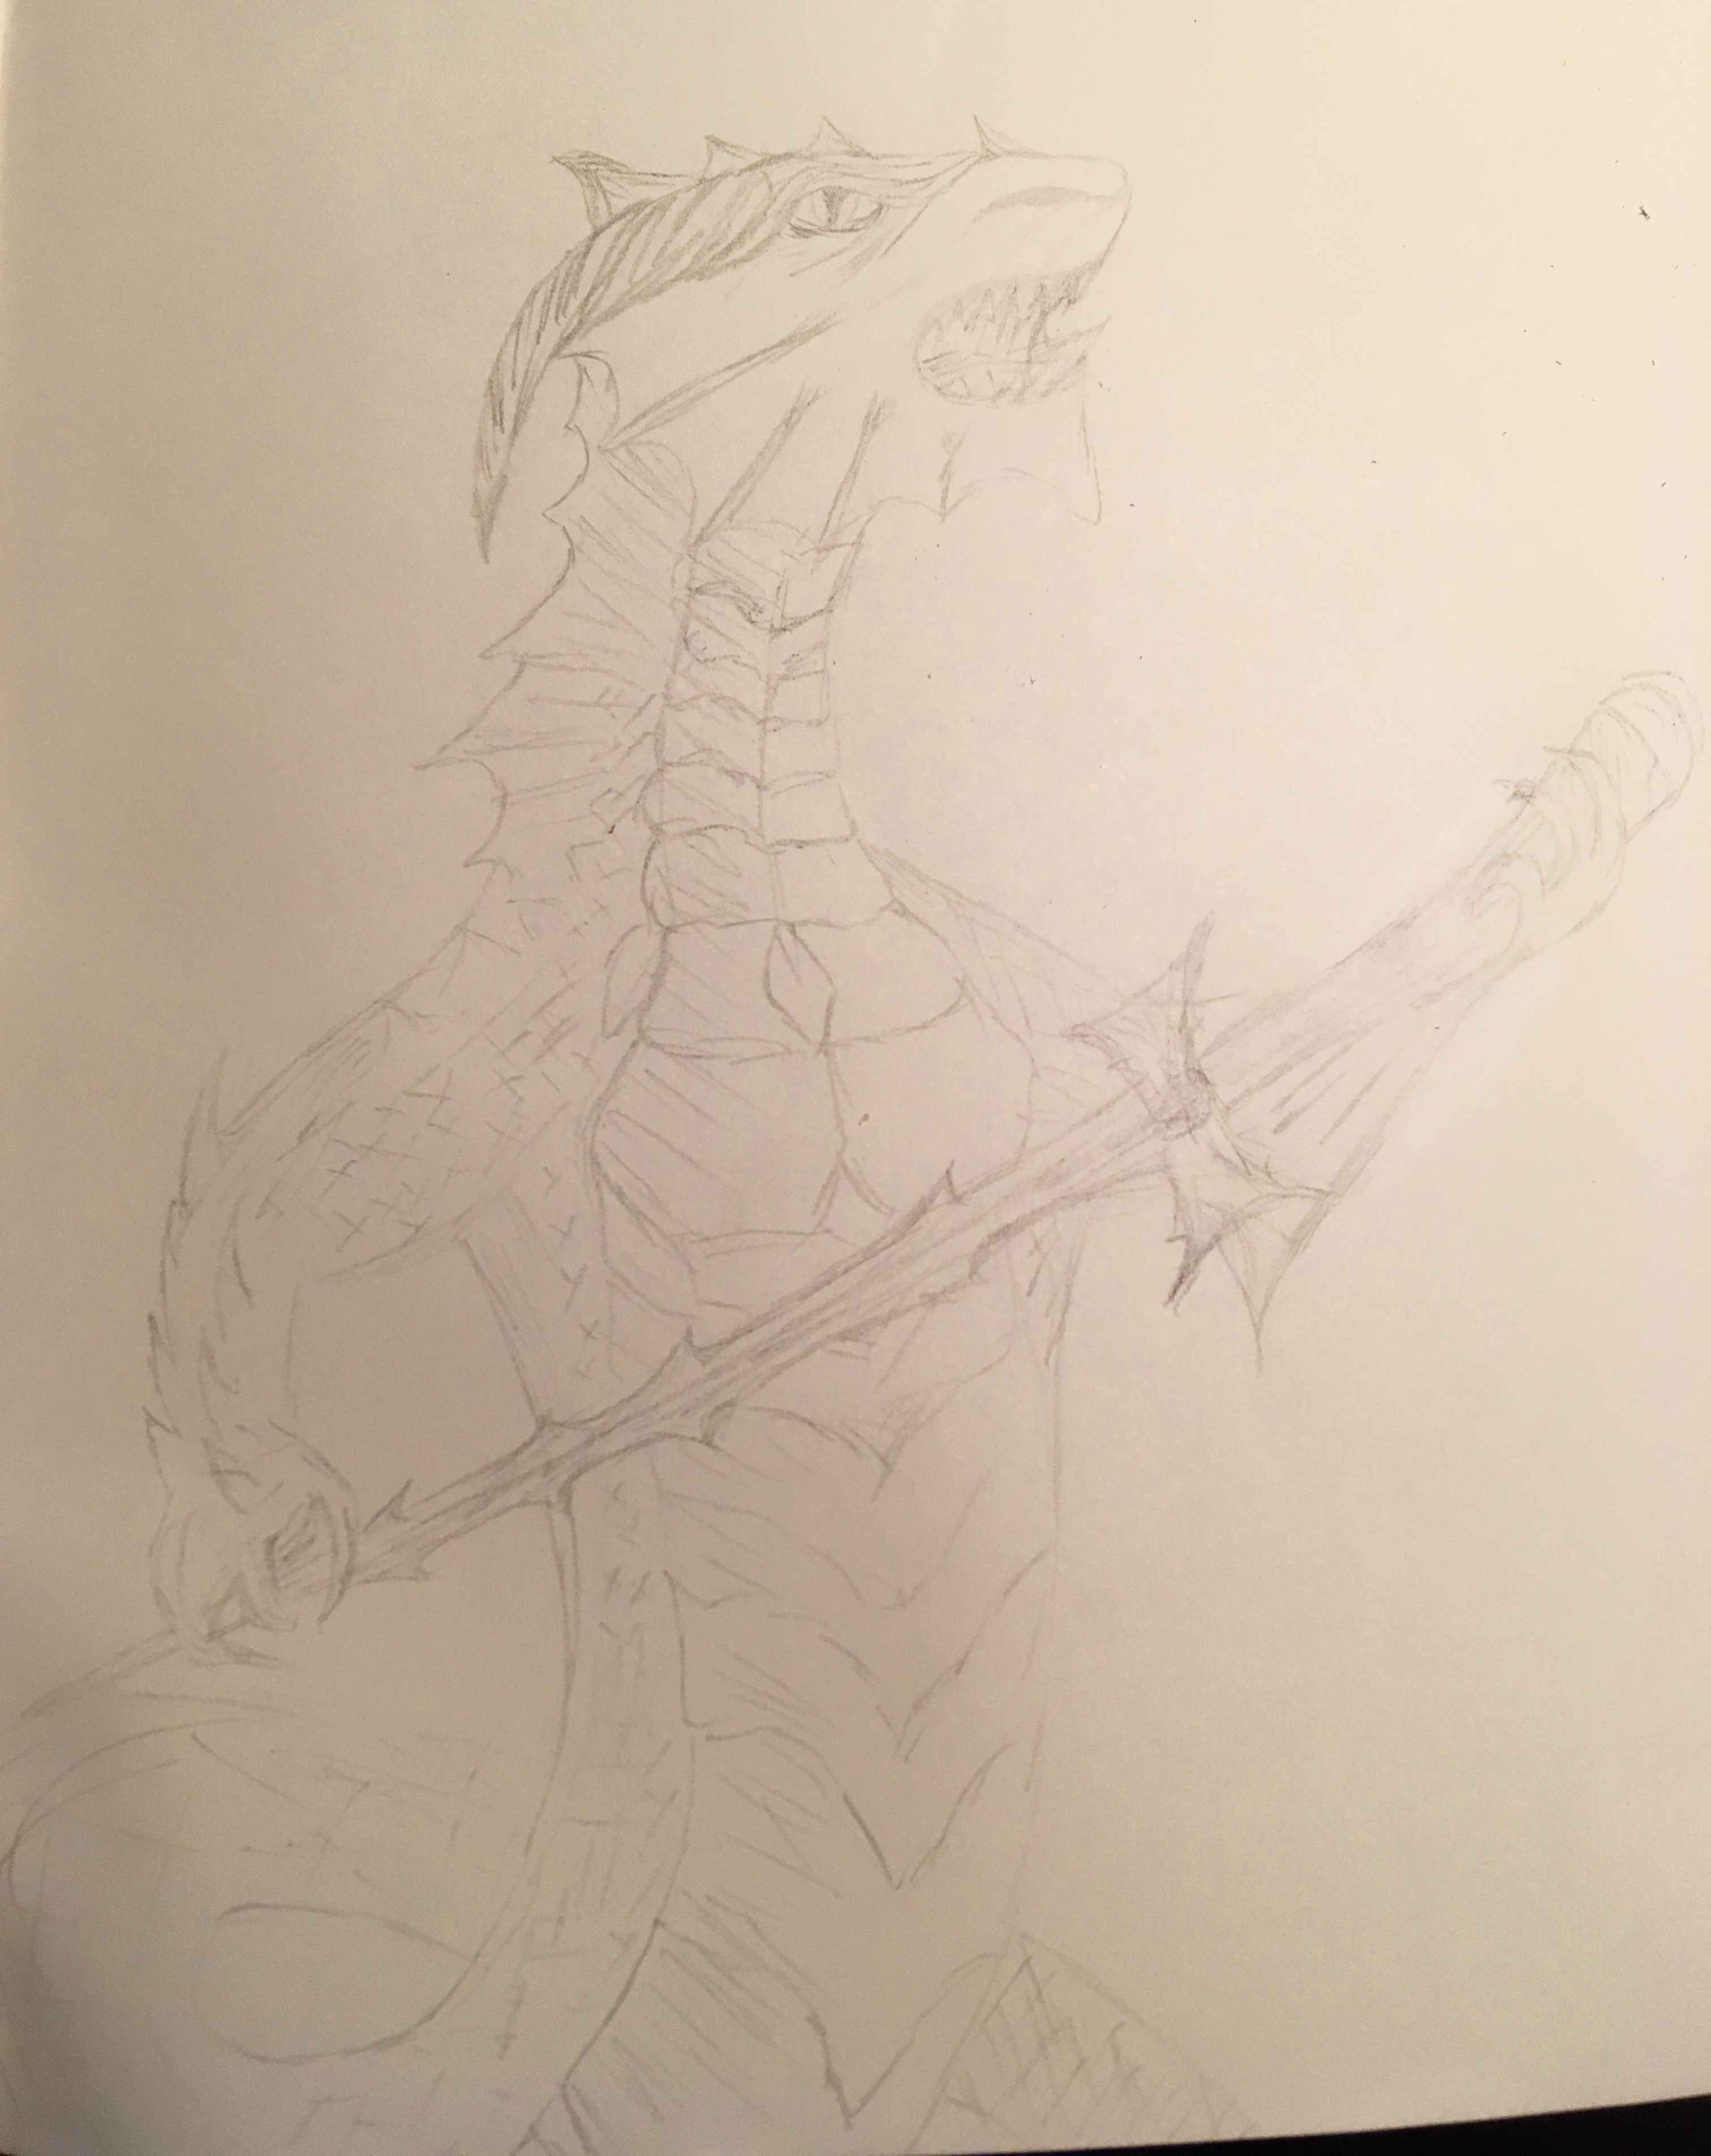 Dragon sketch pencil holding sword